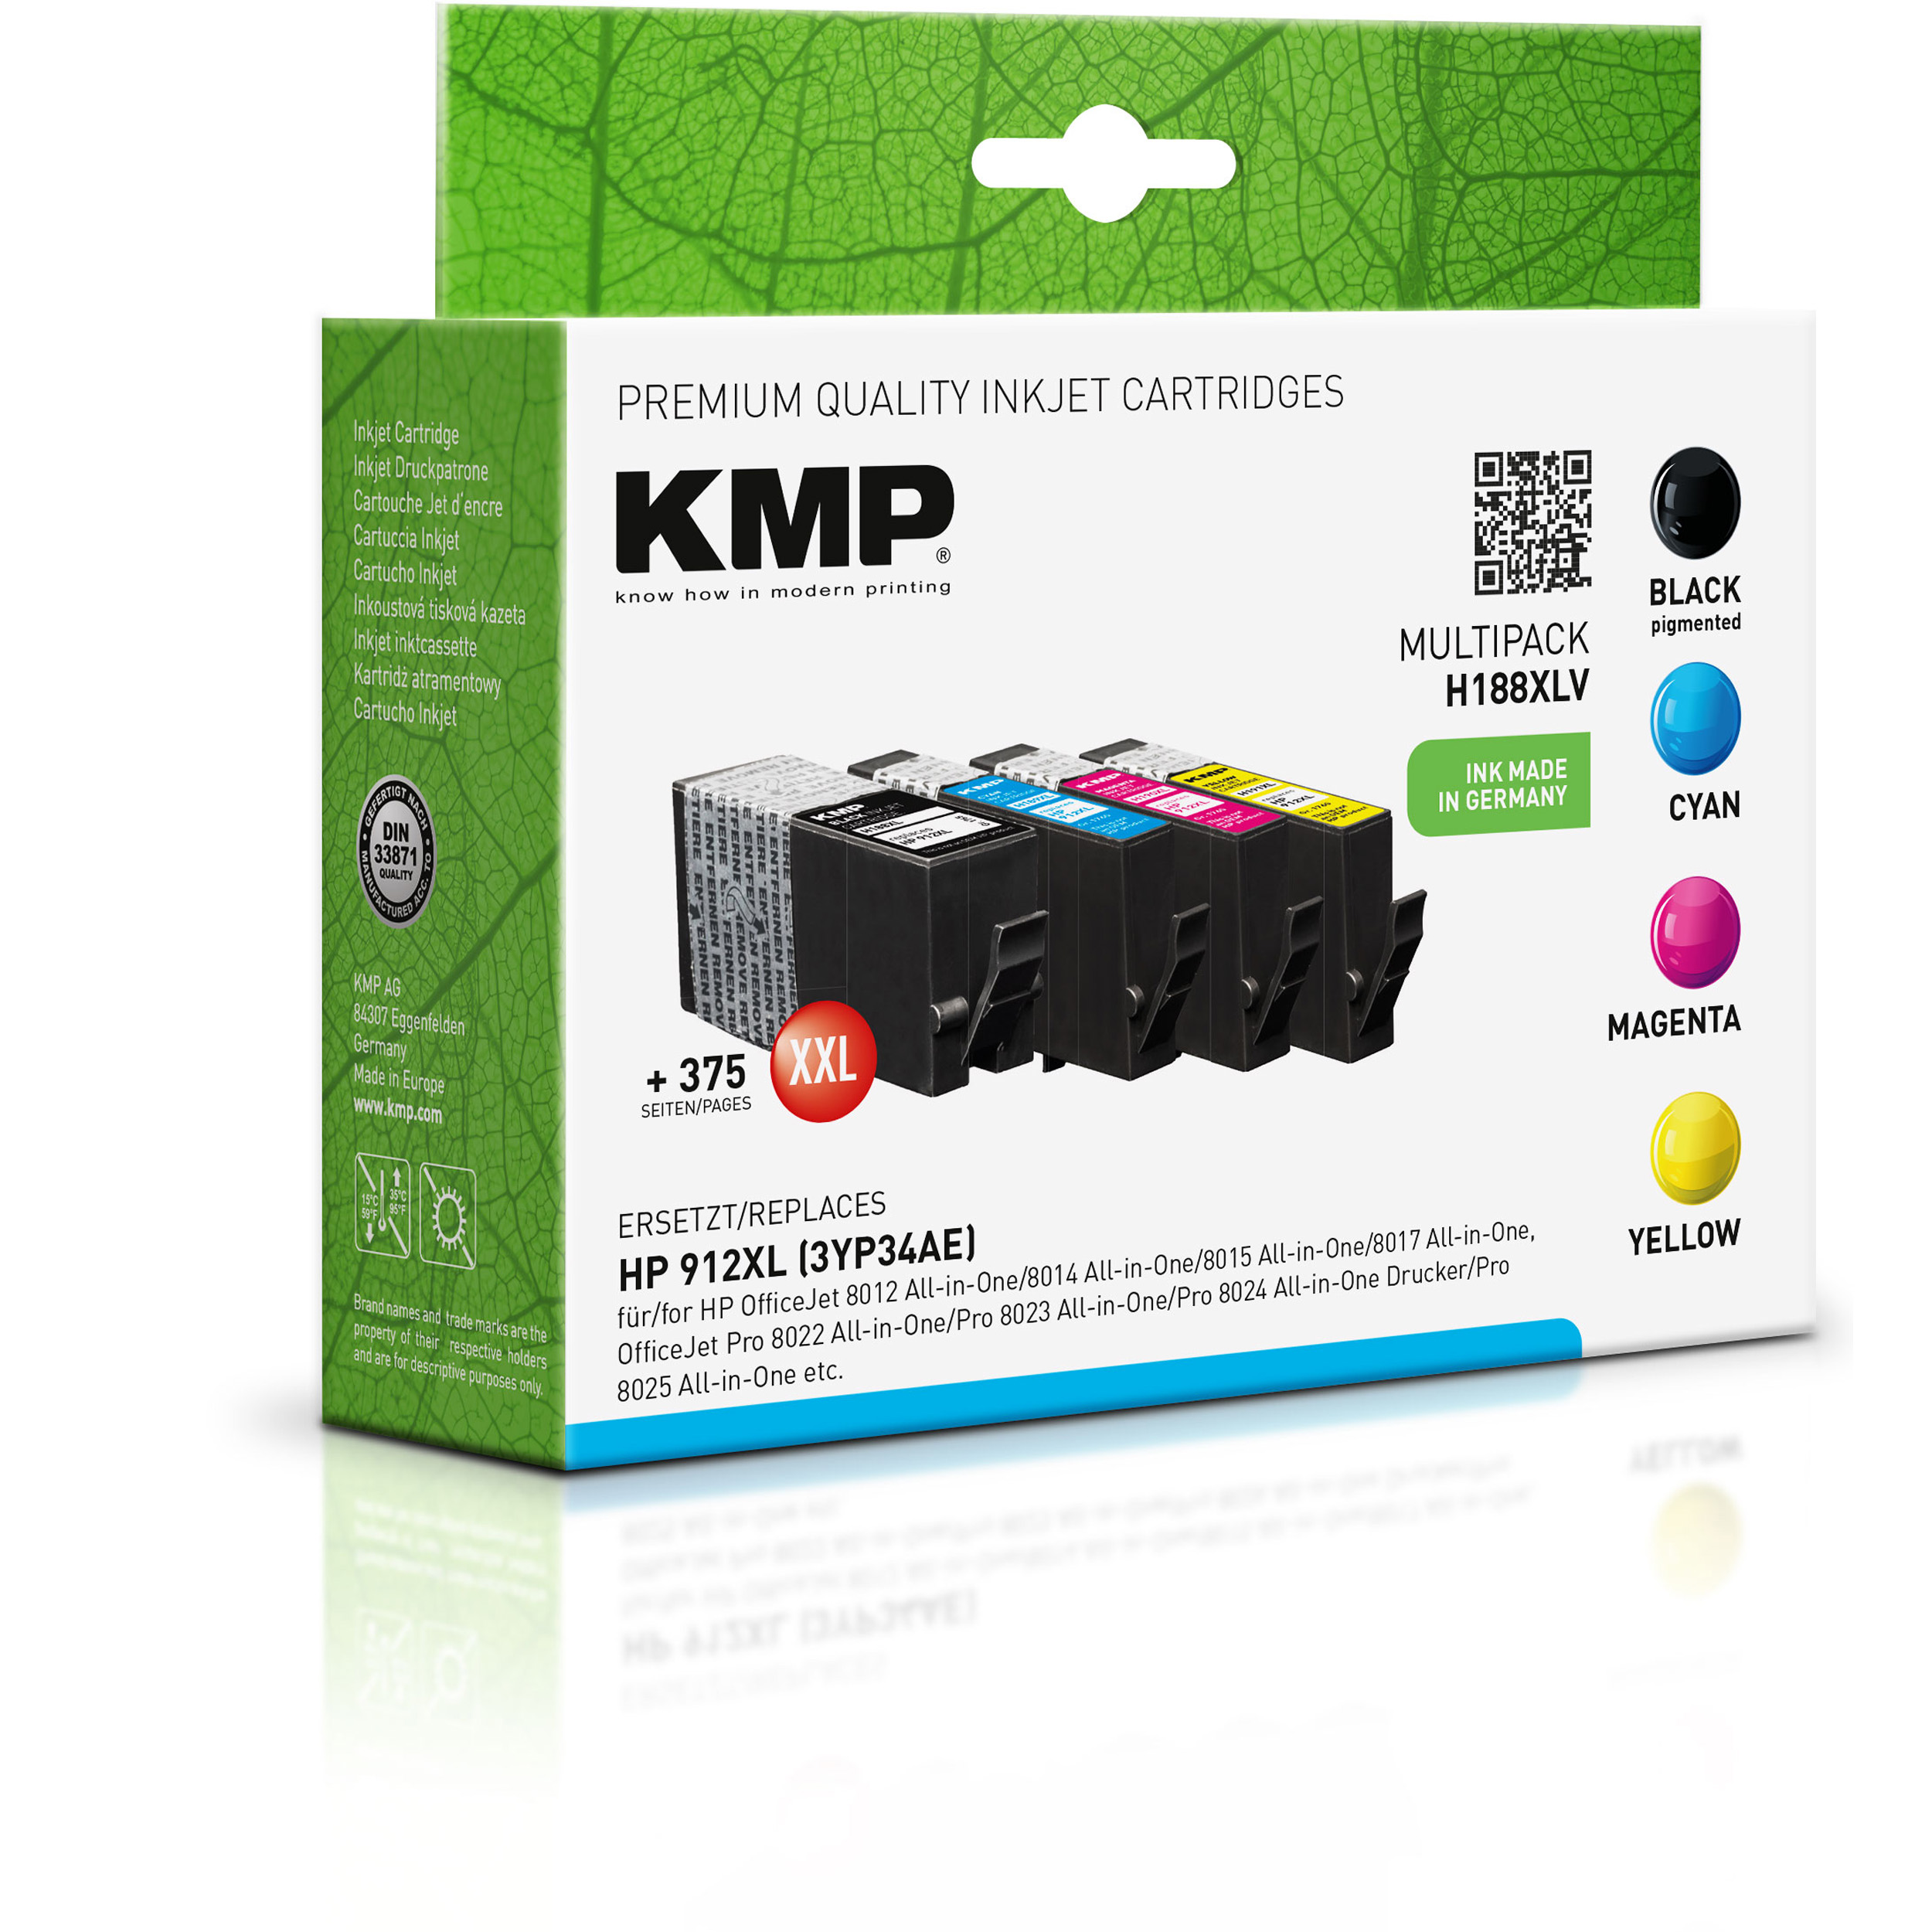 KMP Tintenpatrone für HP 912XL cyan, (3YL84AE, 3YL81AE, Cartridge Multipack schwarz 3YL81AE, 3YL82AE) magenta, 3YL82AE, 3YL83AE) Ink (3YL81AE, gelb